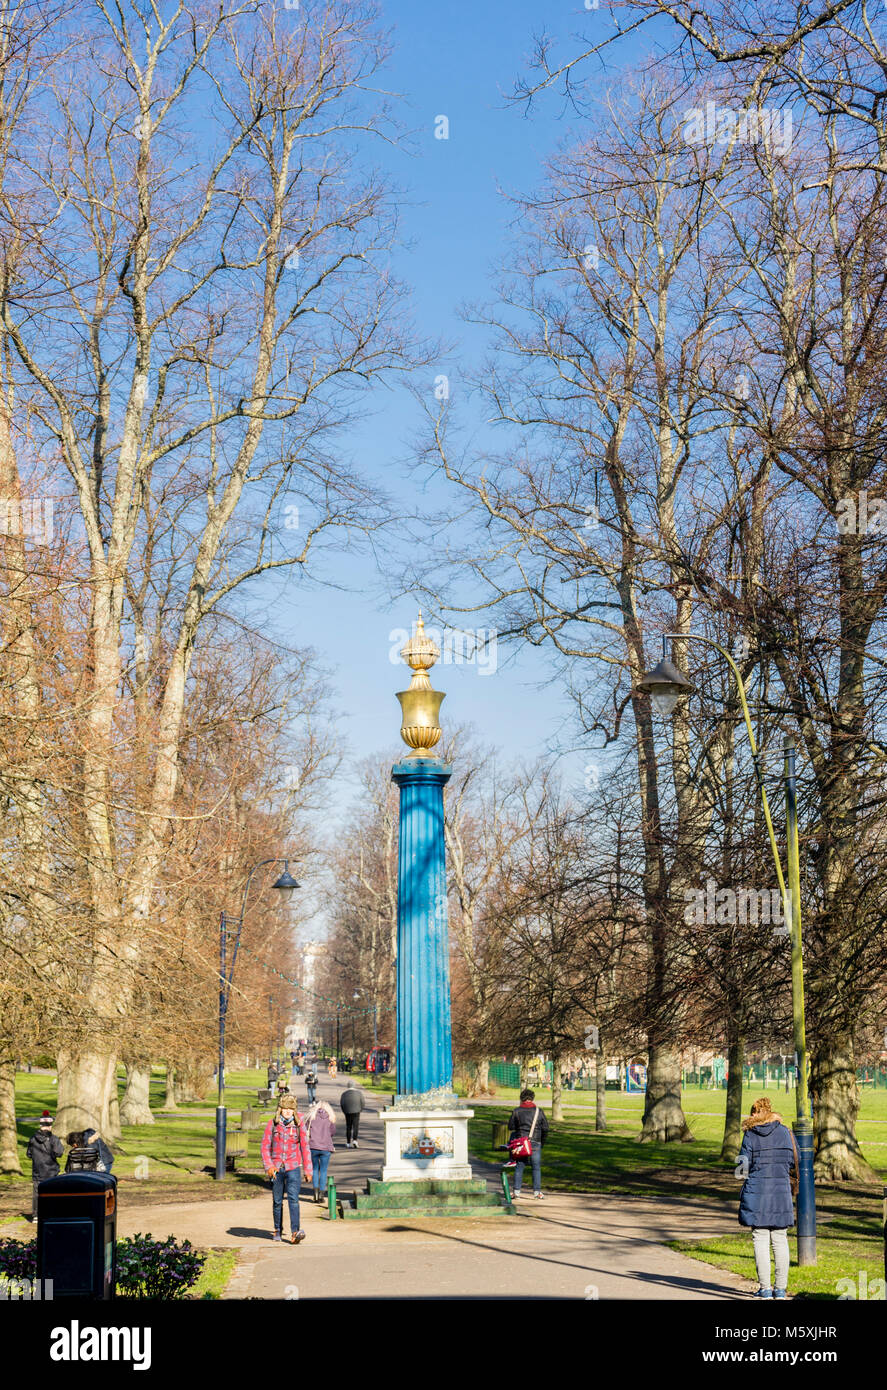 La colonne de gaz - une colonne dorique gravée dans la pierre - à l'entrée de Houndwell Park sur une journée d'hiver ensoleillée à Southampton, England, UK Banque D'Images